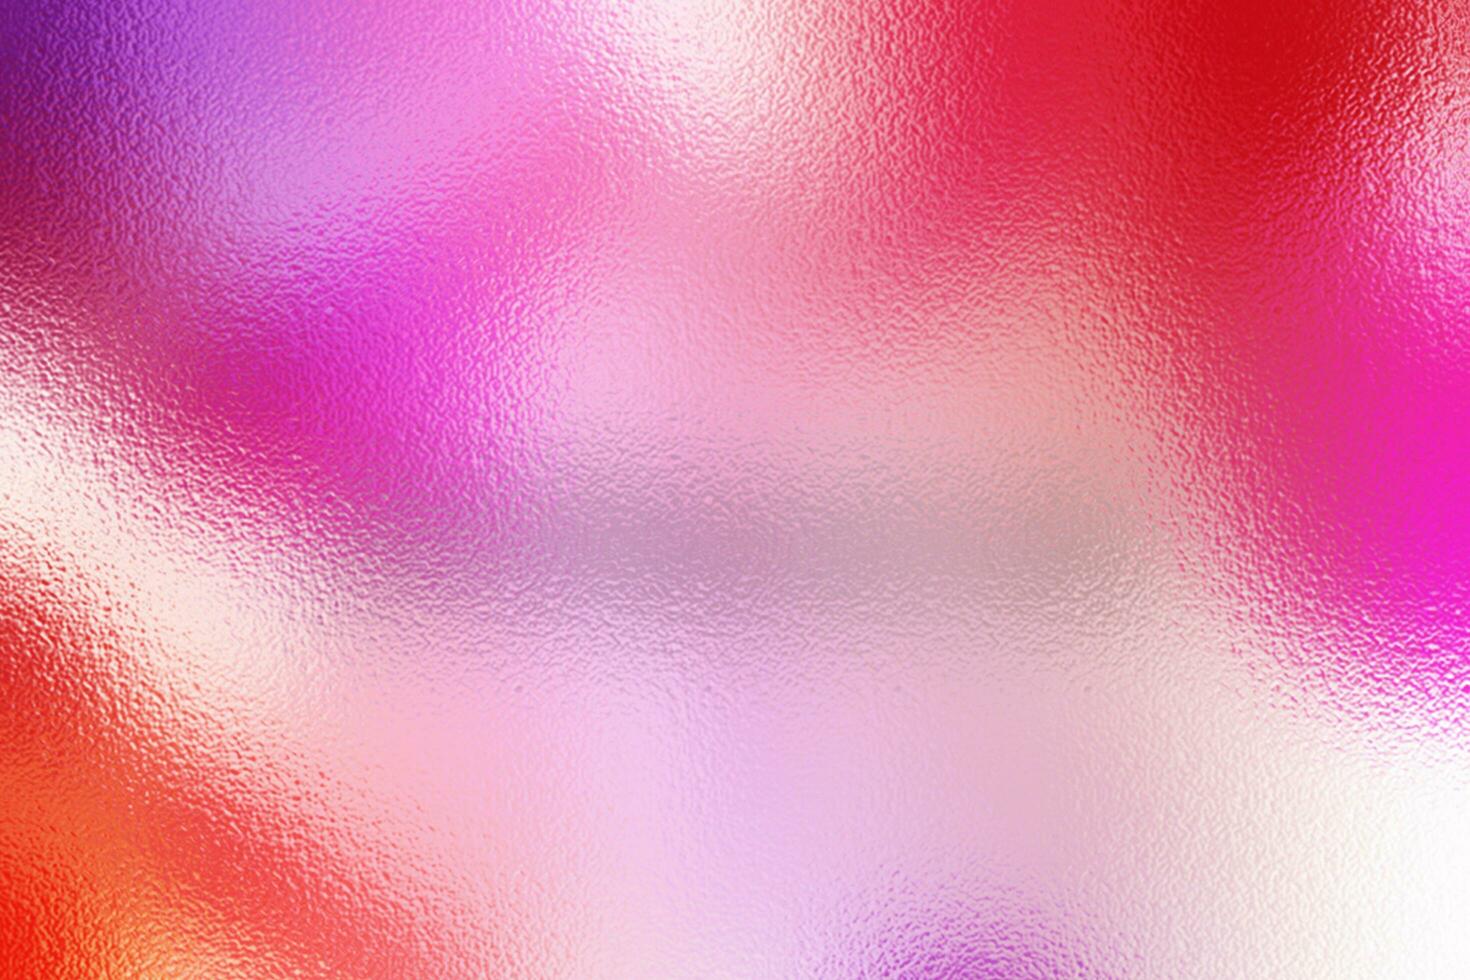 creatief abstract folie achtergrond onscherp levendig wazig kleurrijk bureaublad behang illustraties foto